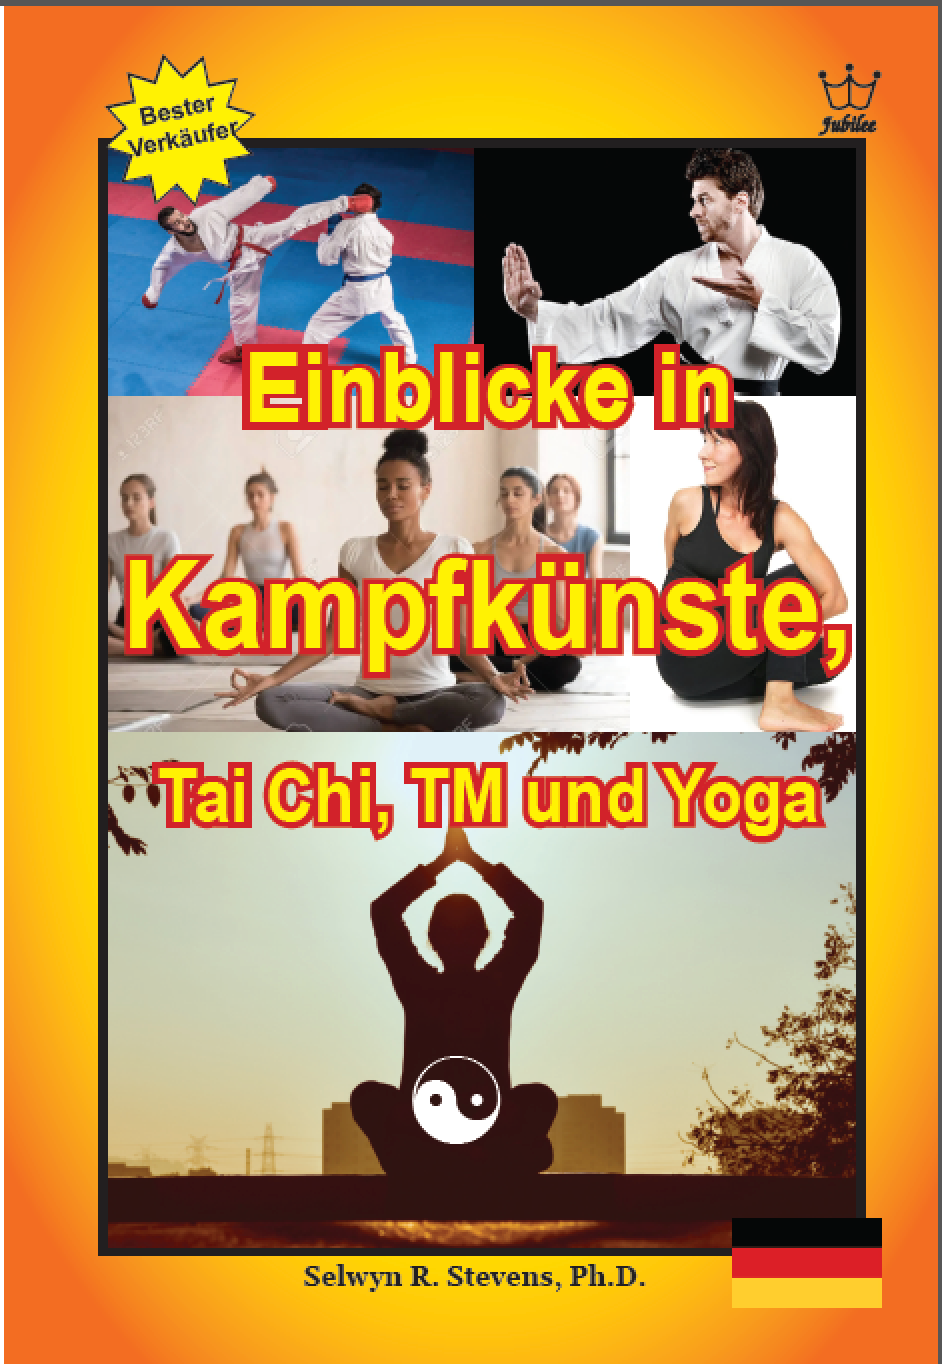 Einblicke in Kampfkünste, Tai Chi, TM und Yoga - eBook in German Language